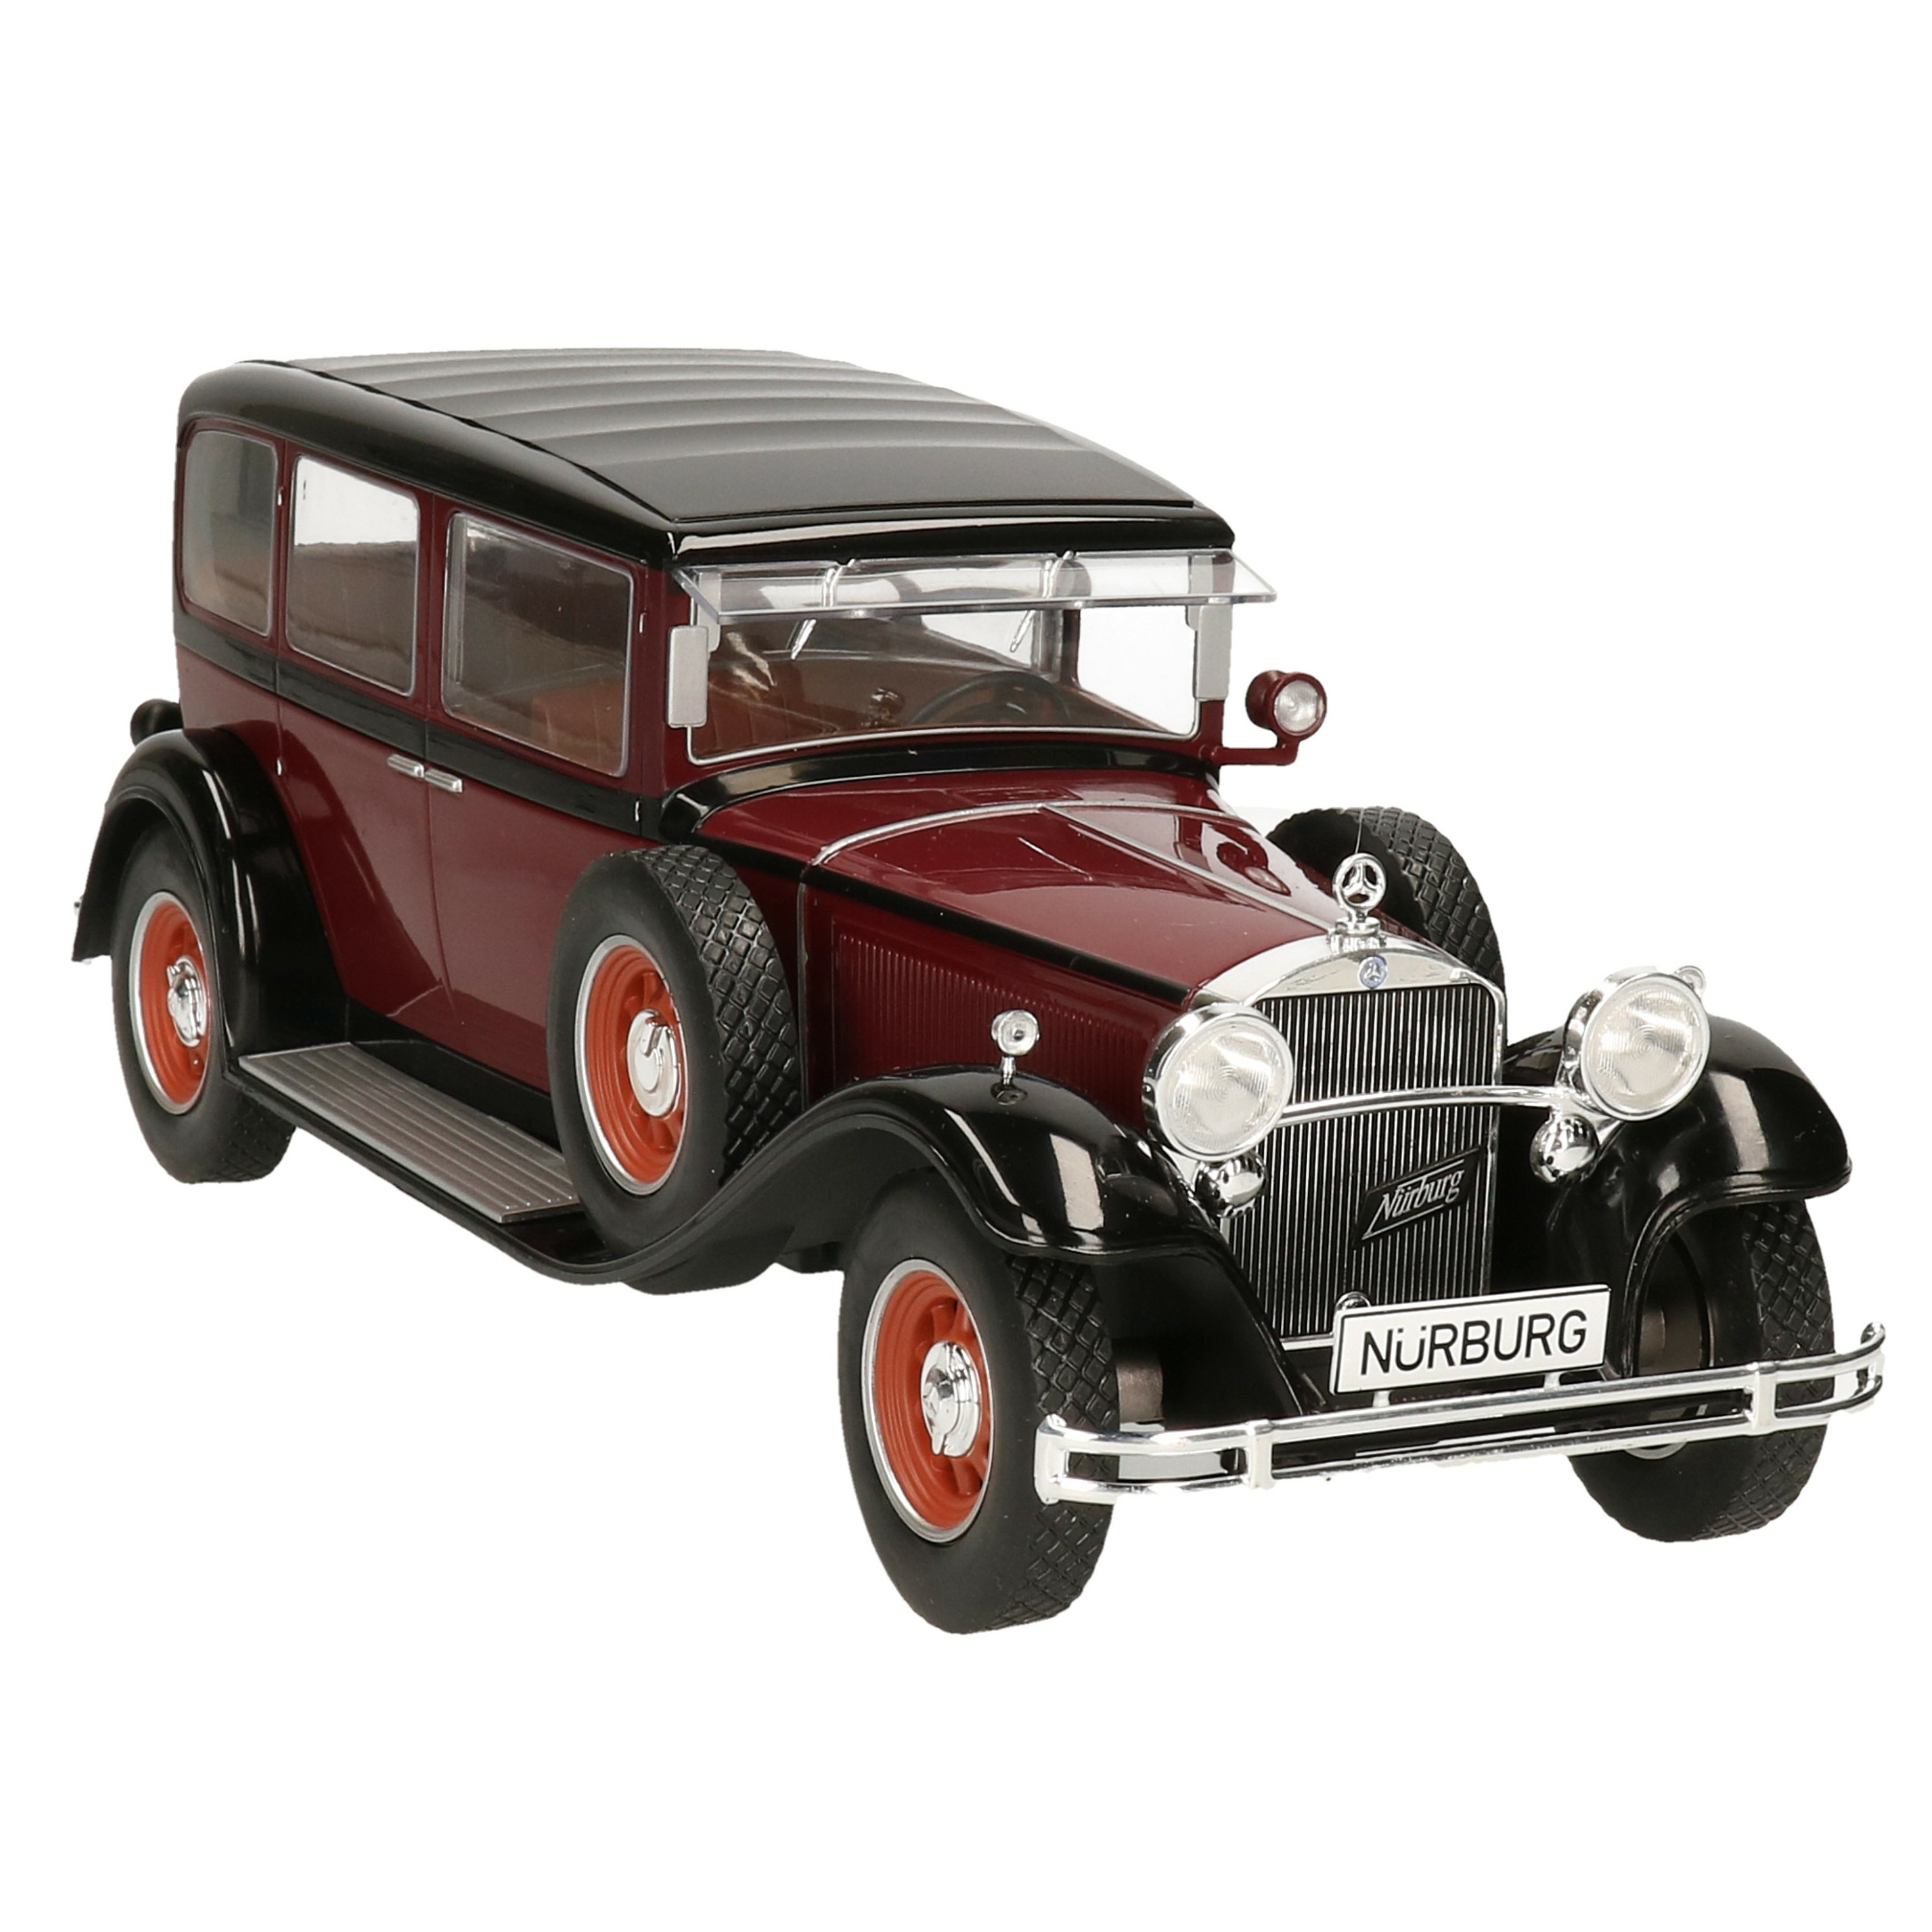 Modelauto-schaalmodel Mercedes-Benz Typ Nurburg 460 1928 schaal 1:18-28 x 9 x 11 cm